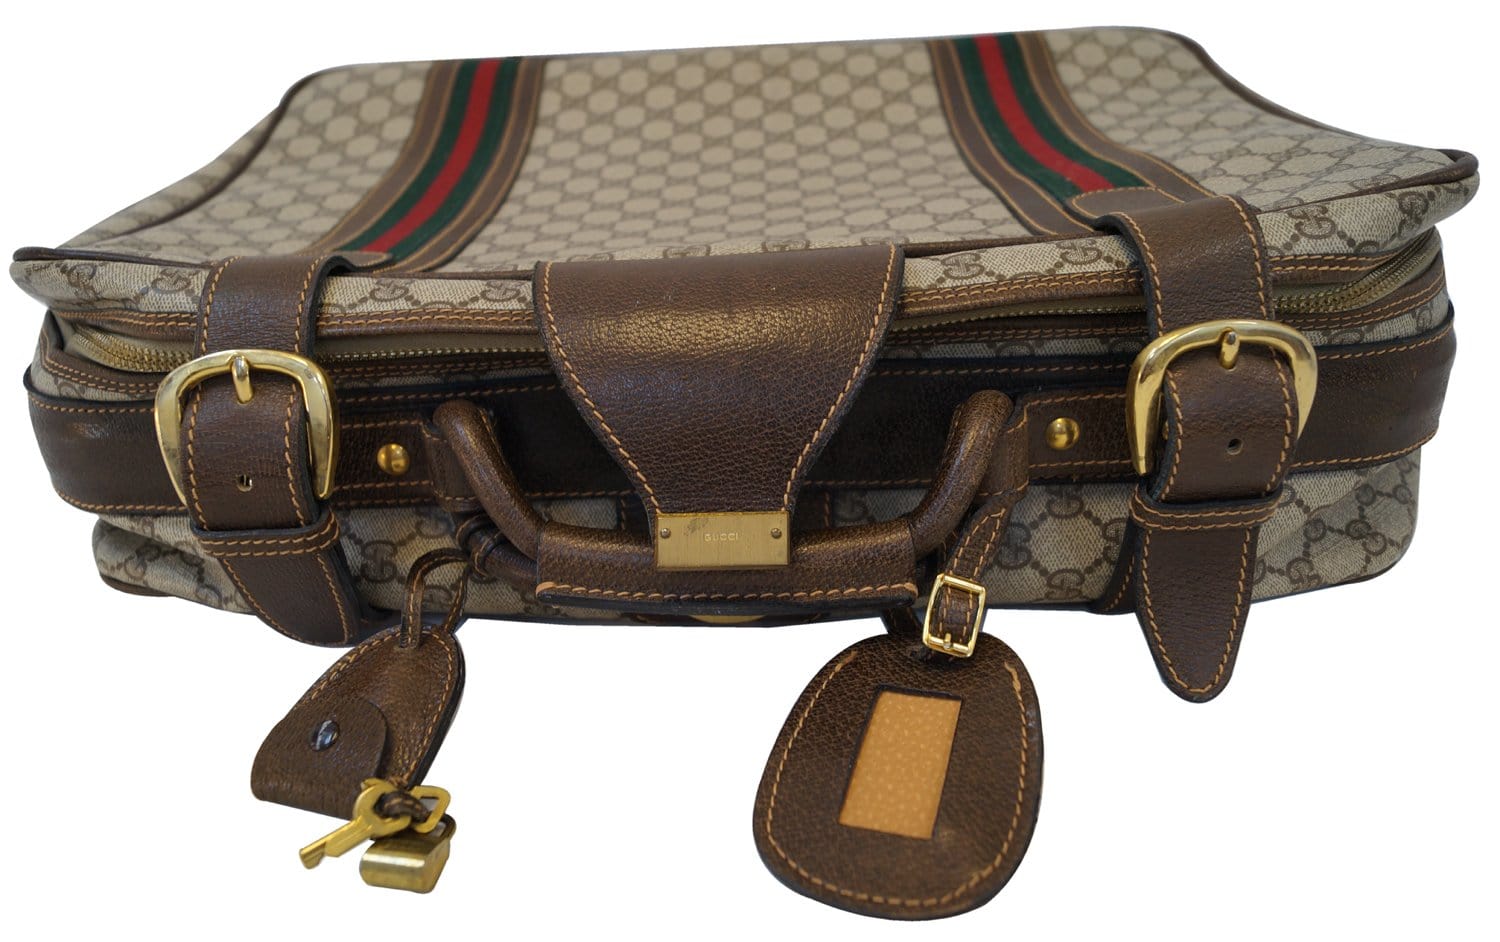 Gucci - garment monogram bag - Suitcase - Catawiki